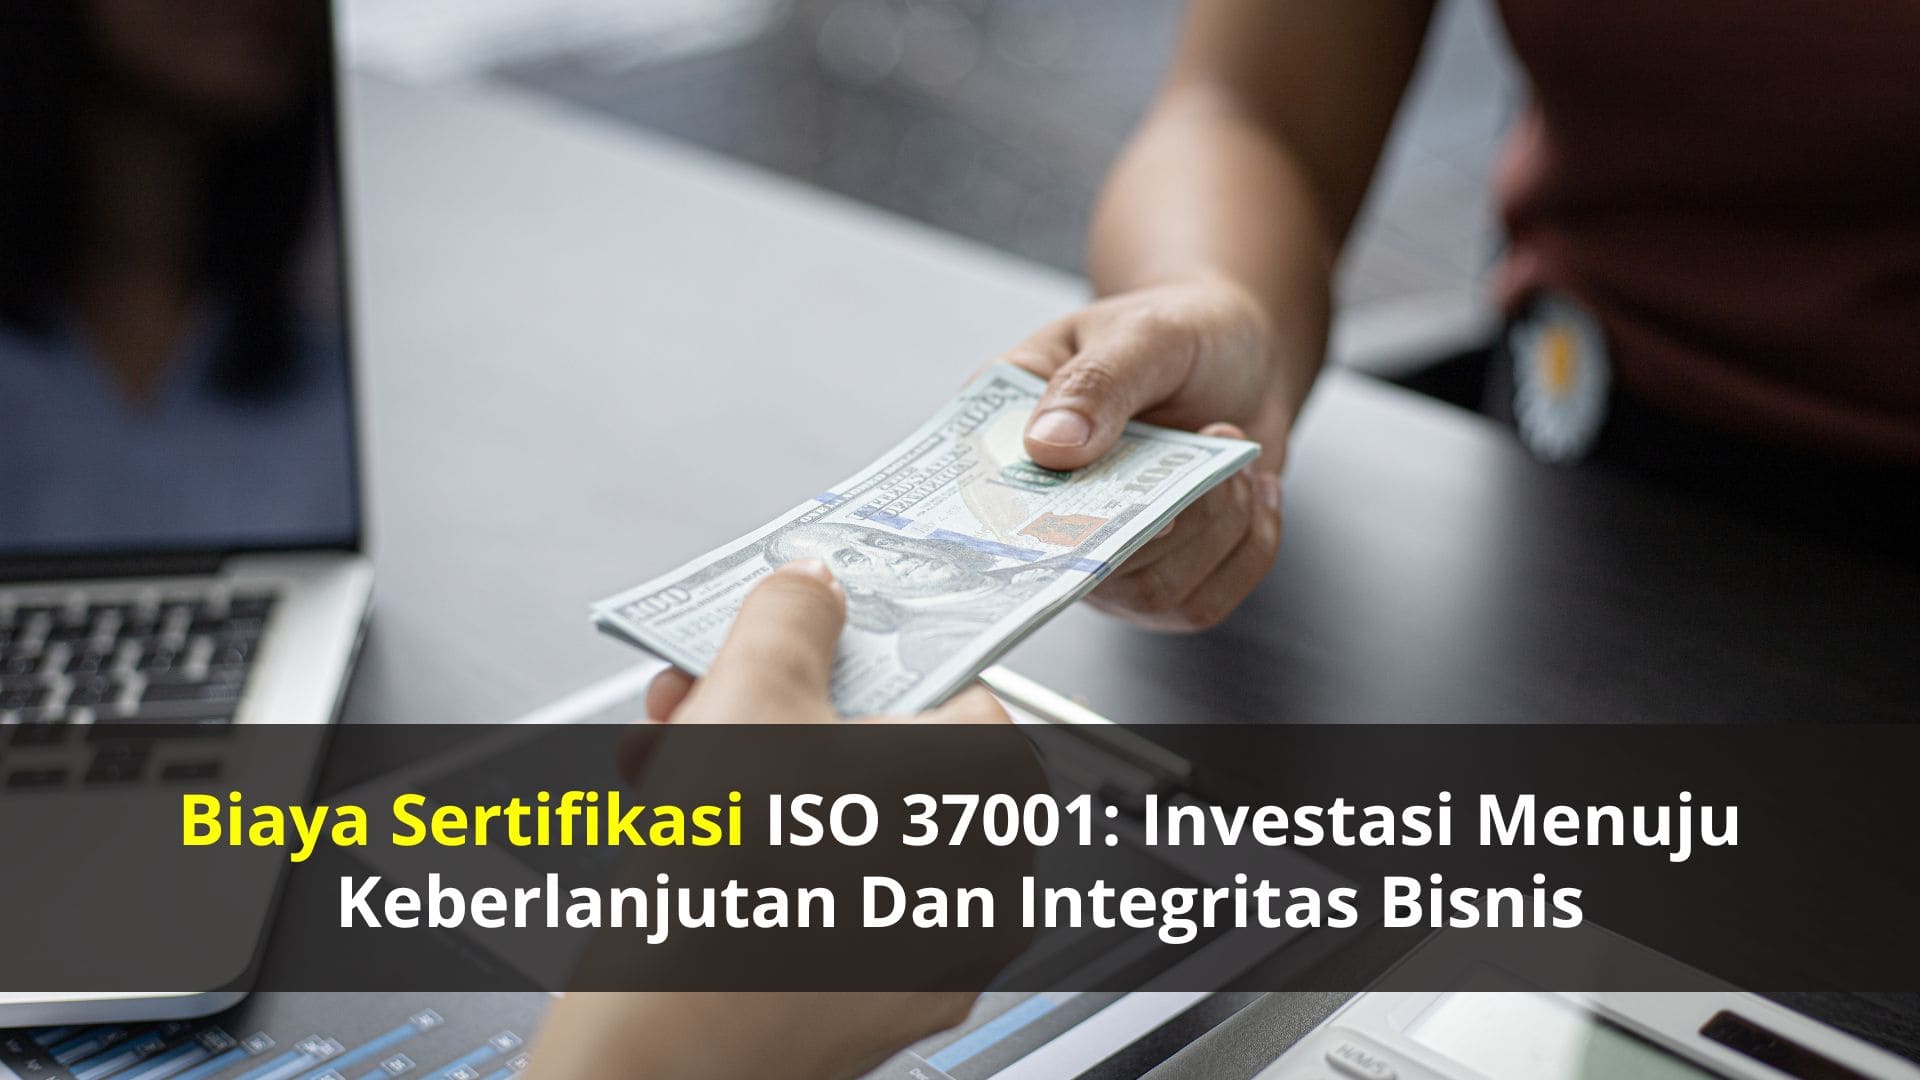 Biaya Sertifikasi ISO 37001: Investasi Menuju Keberlanjutan dan Integritas Bisnis